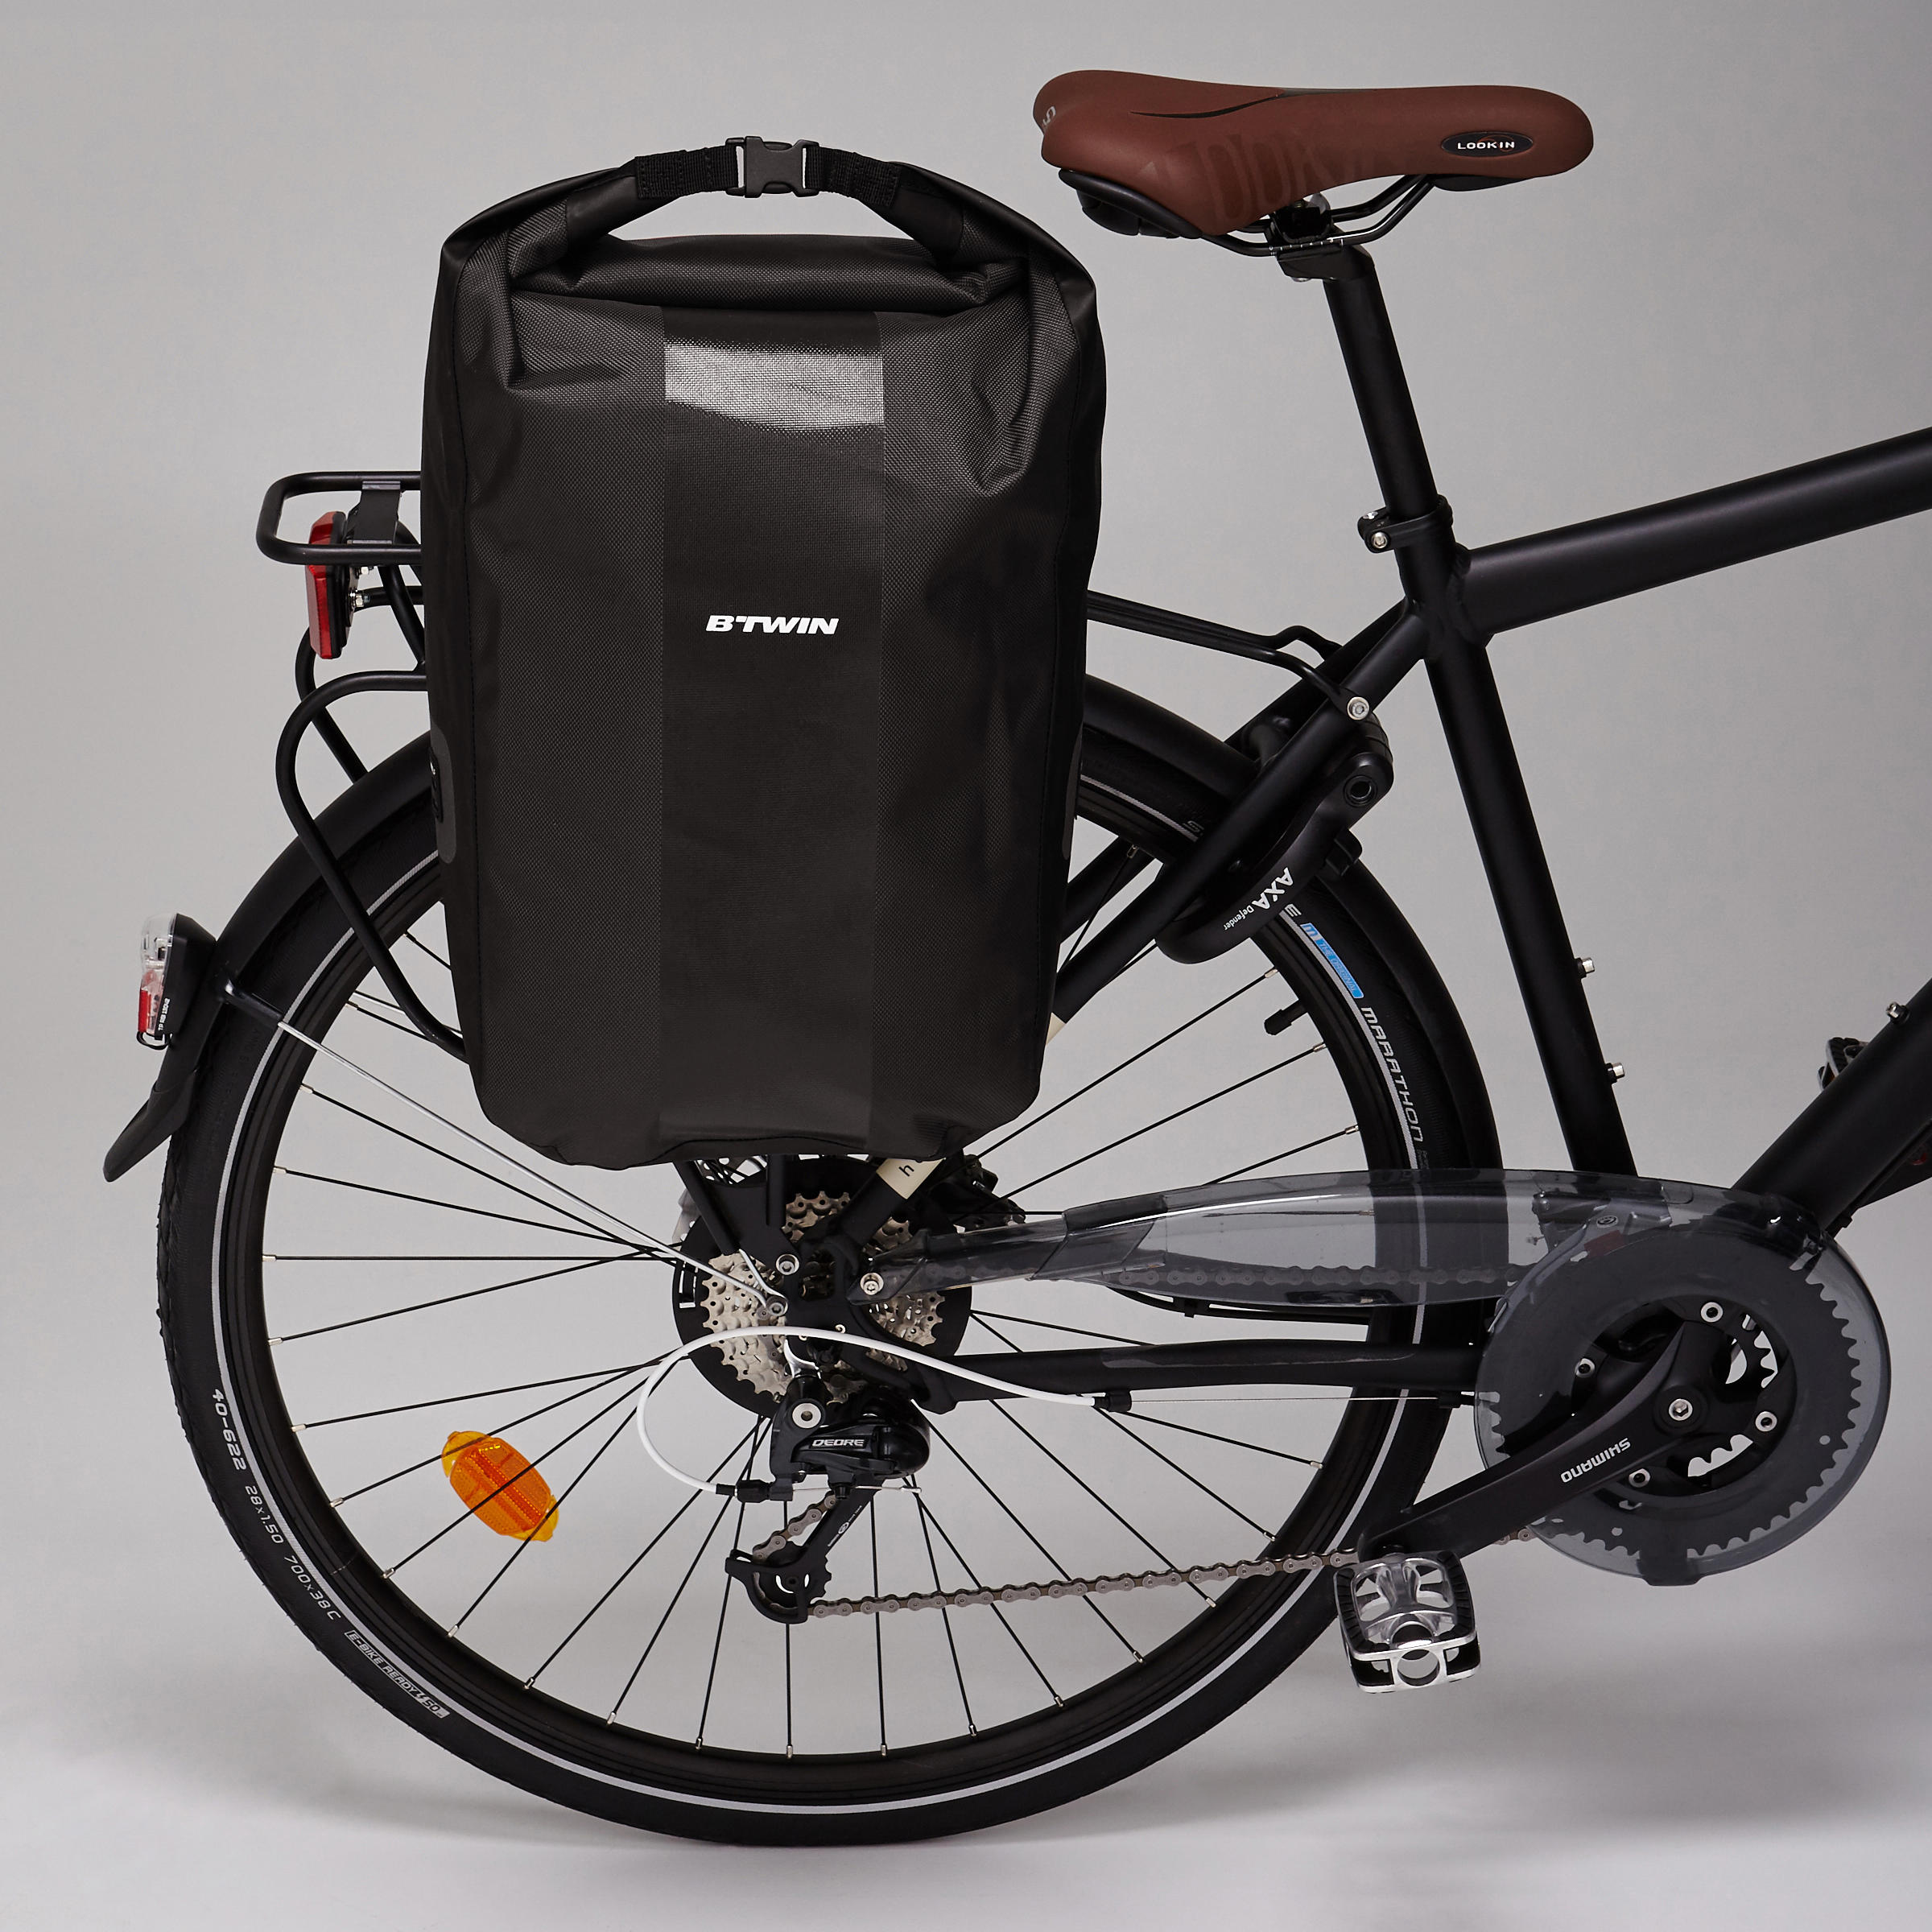 Waterproof Pannier Rack Bike Bag 500 20L - Black 7/8